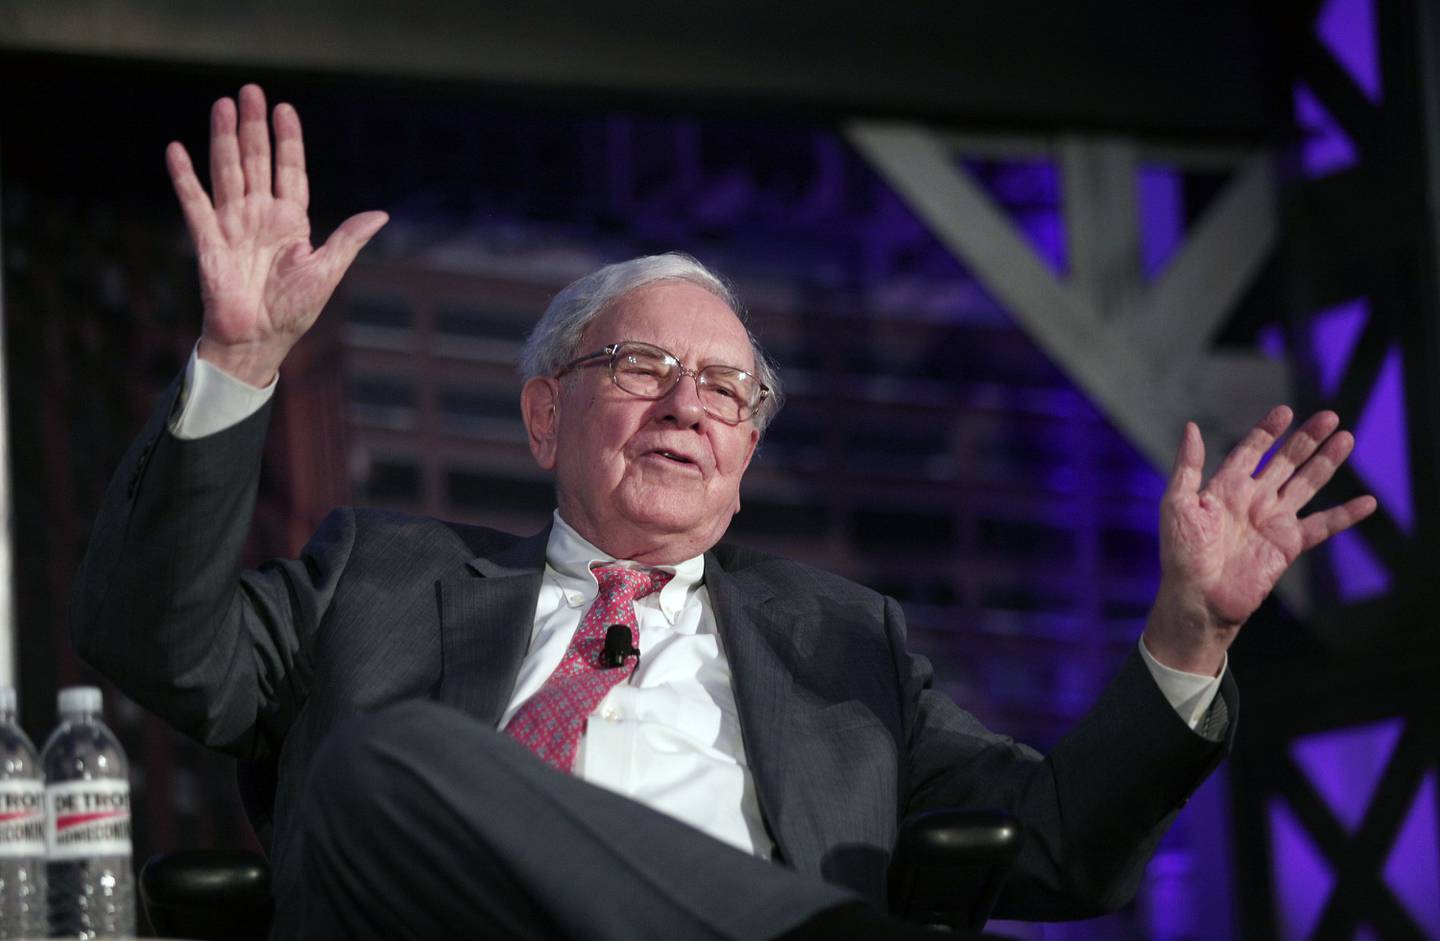 Buffett respondeu dizendo que as empresas da Berkshire lidam com suas decisões de trabalho individualmente